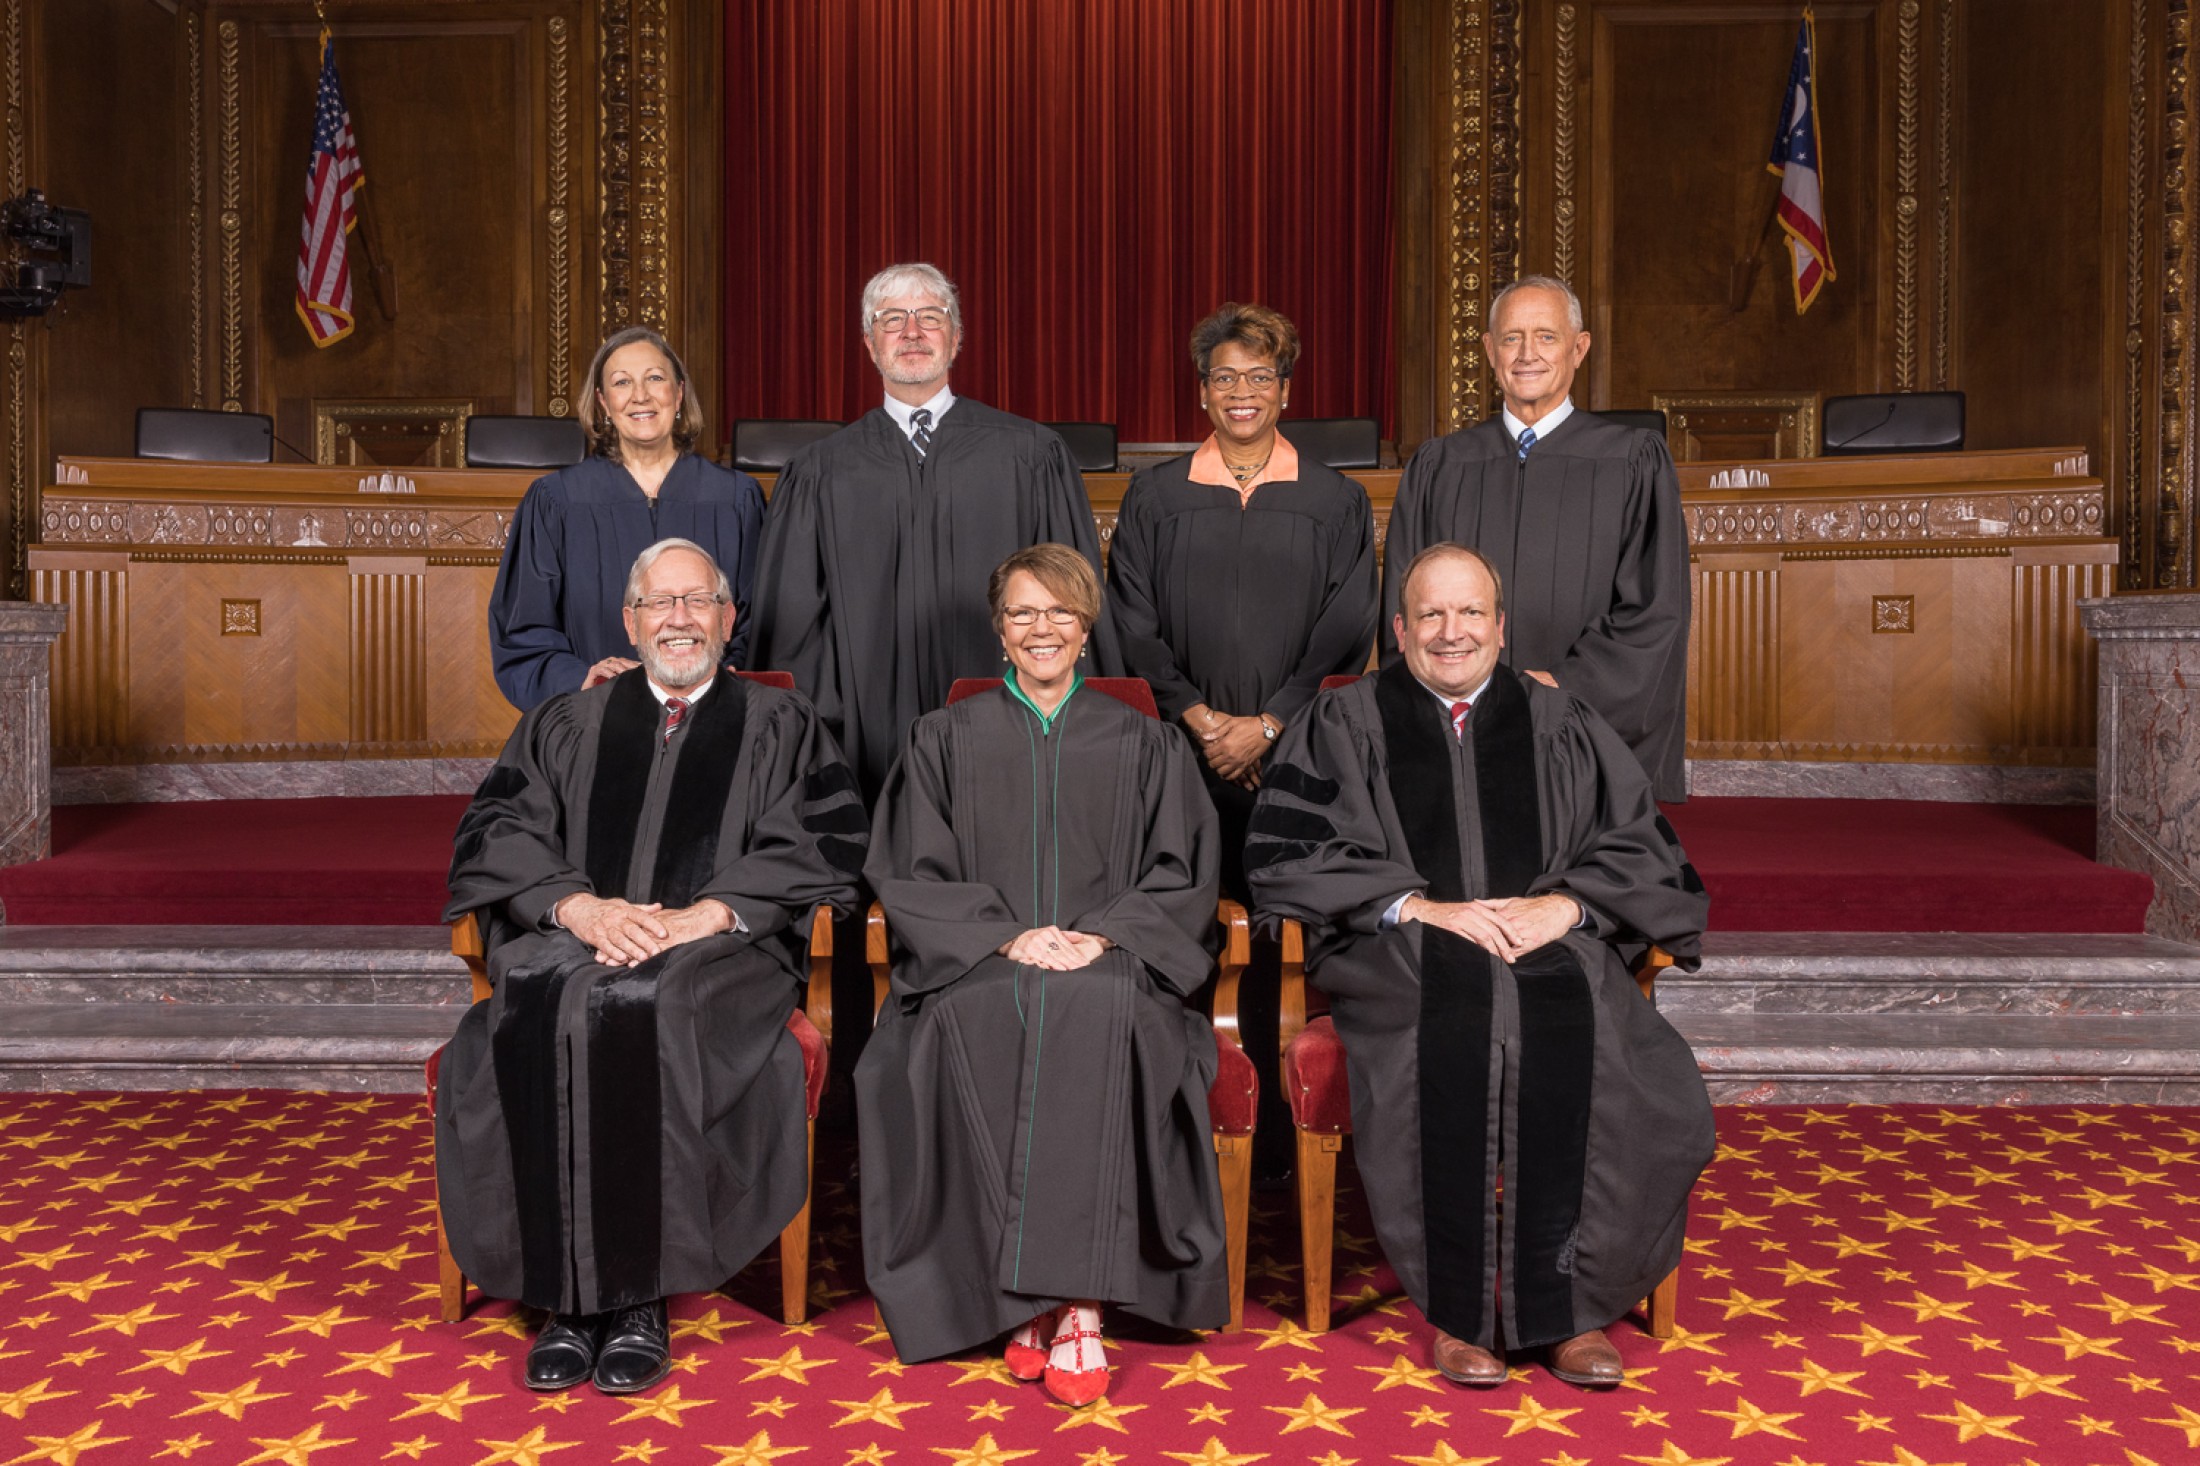 Supreme Court Judges